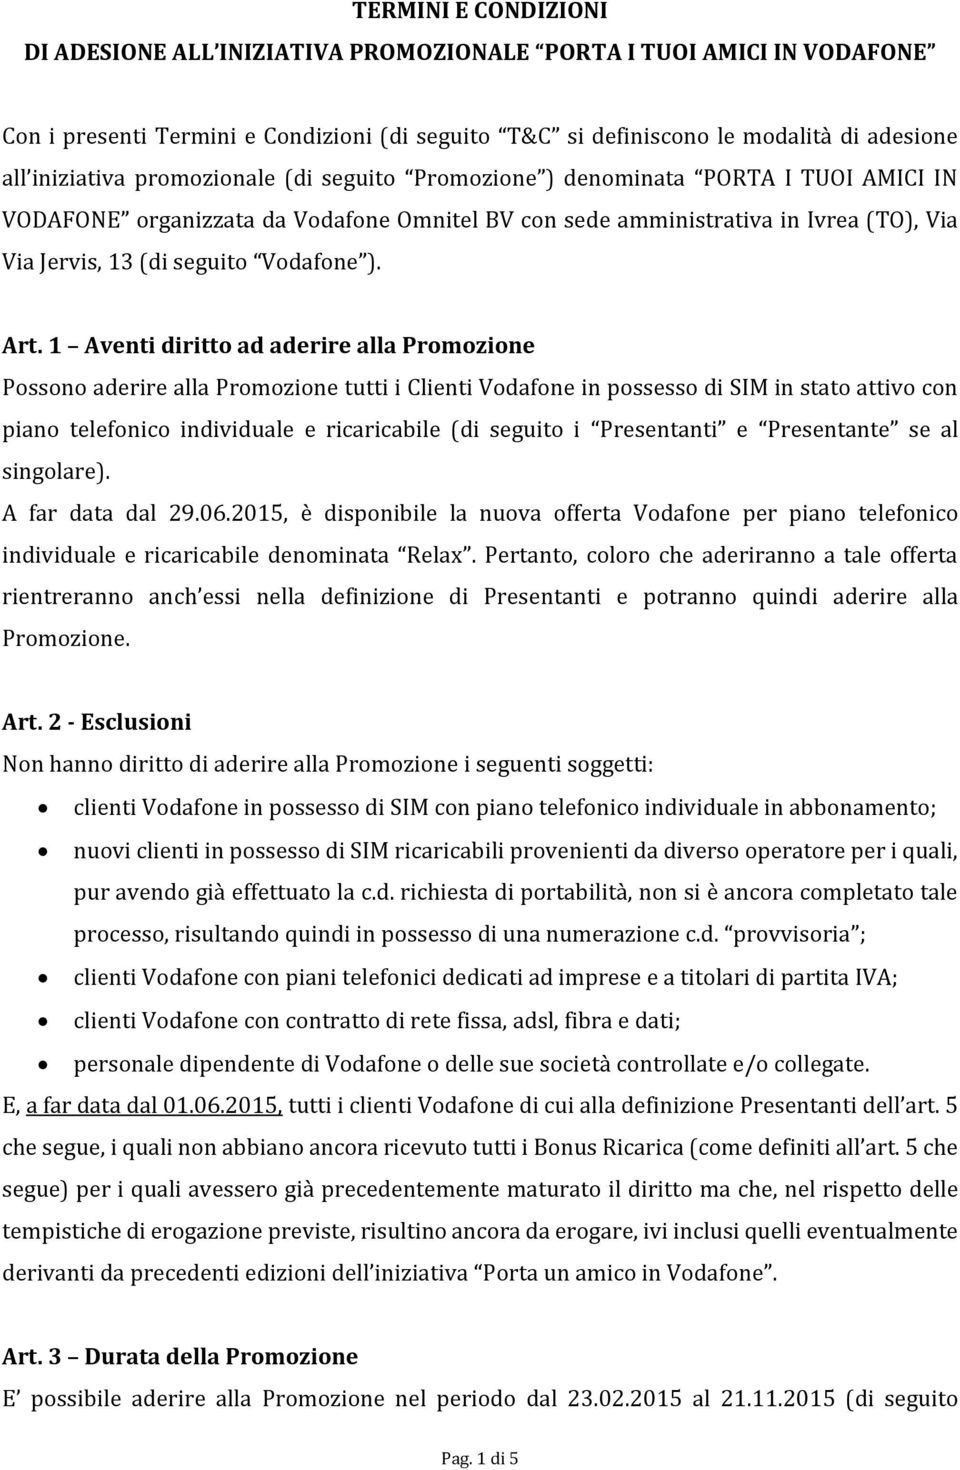 Art. 1 Aventi diritto ad aderire alla Promozione Possono aderire alla Promozione tutti i Clienti Vodafone in possesso di SIM in stato attivo con piano telefonico individuale e ricaricabile (di